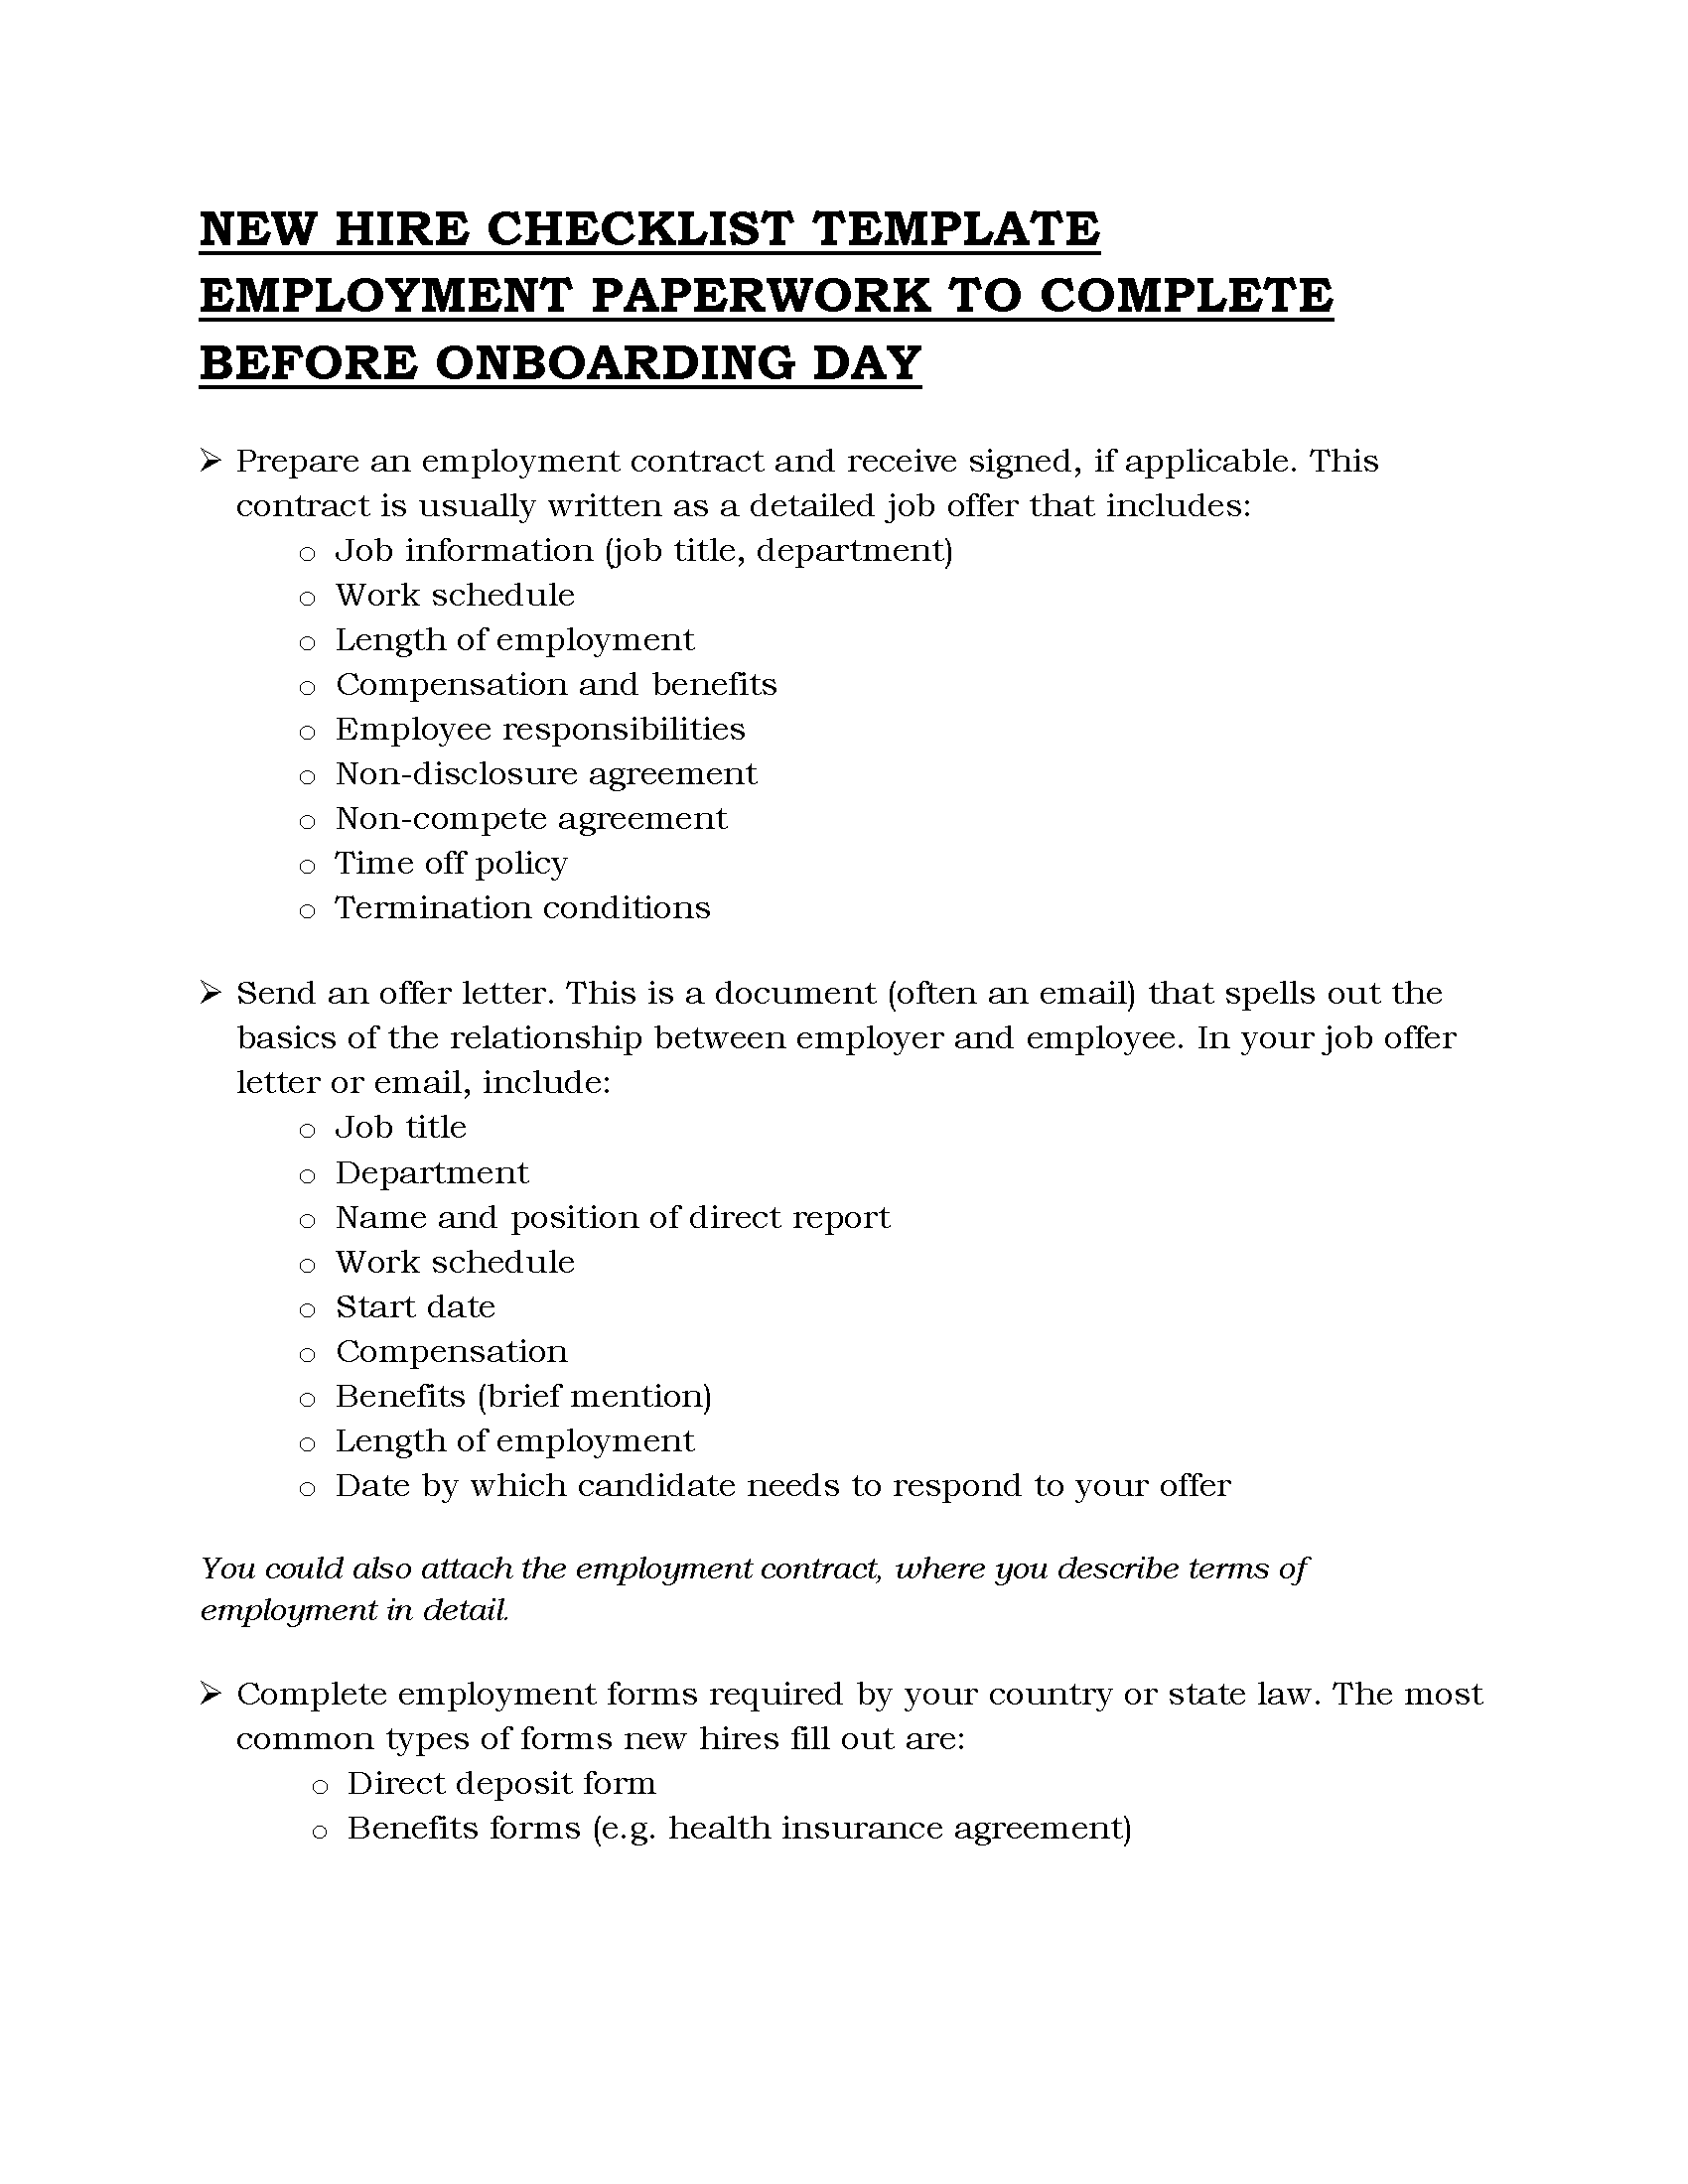 07 - New hire checklist template